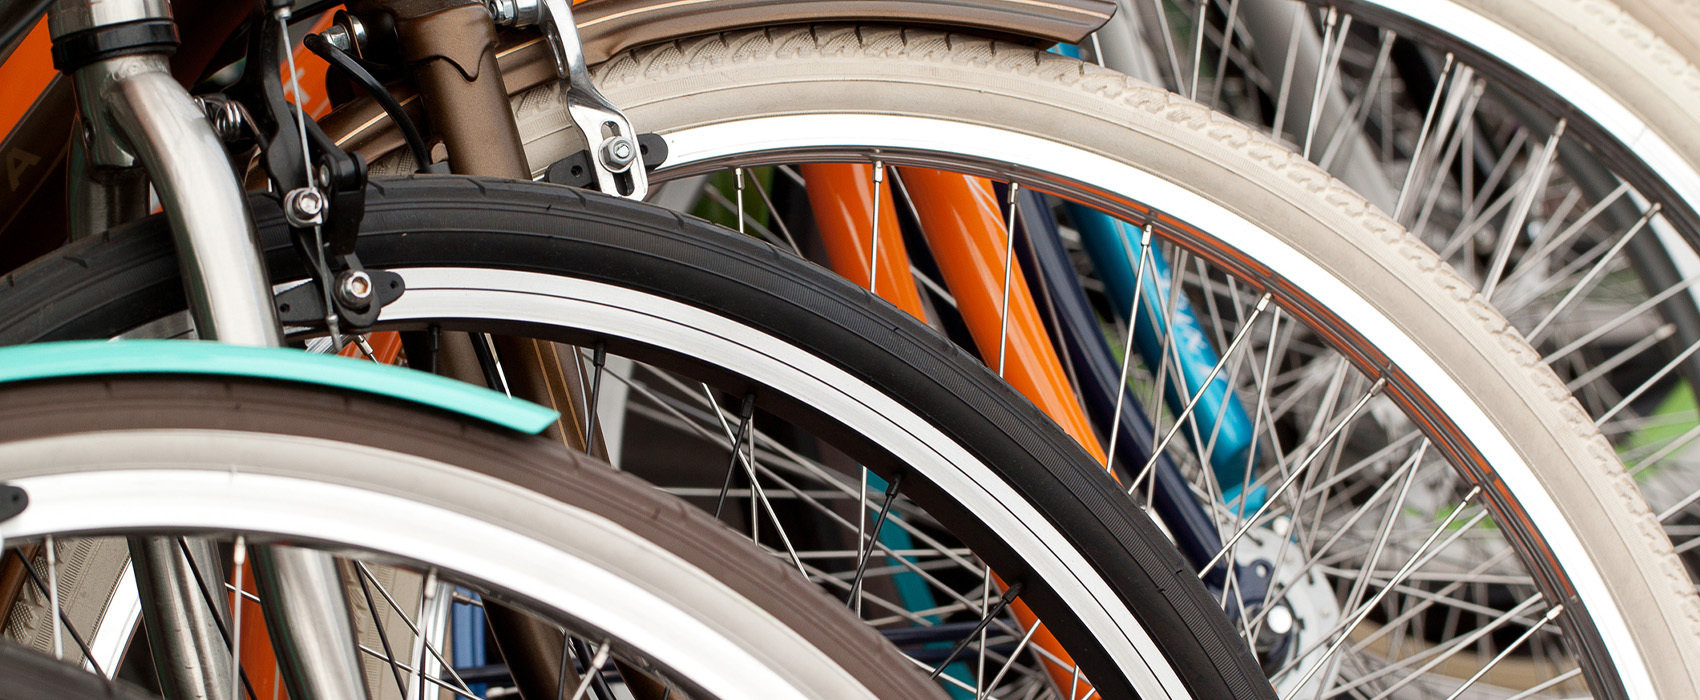 Bourse aux vélos - Vide atelier "Bike Friday"